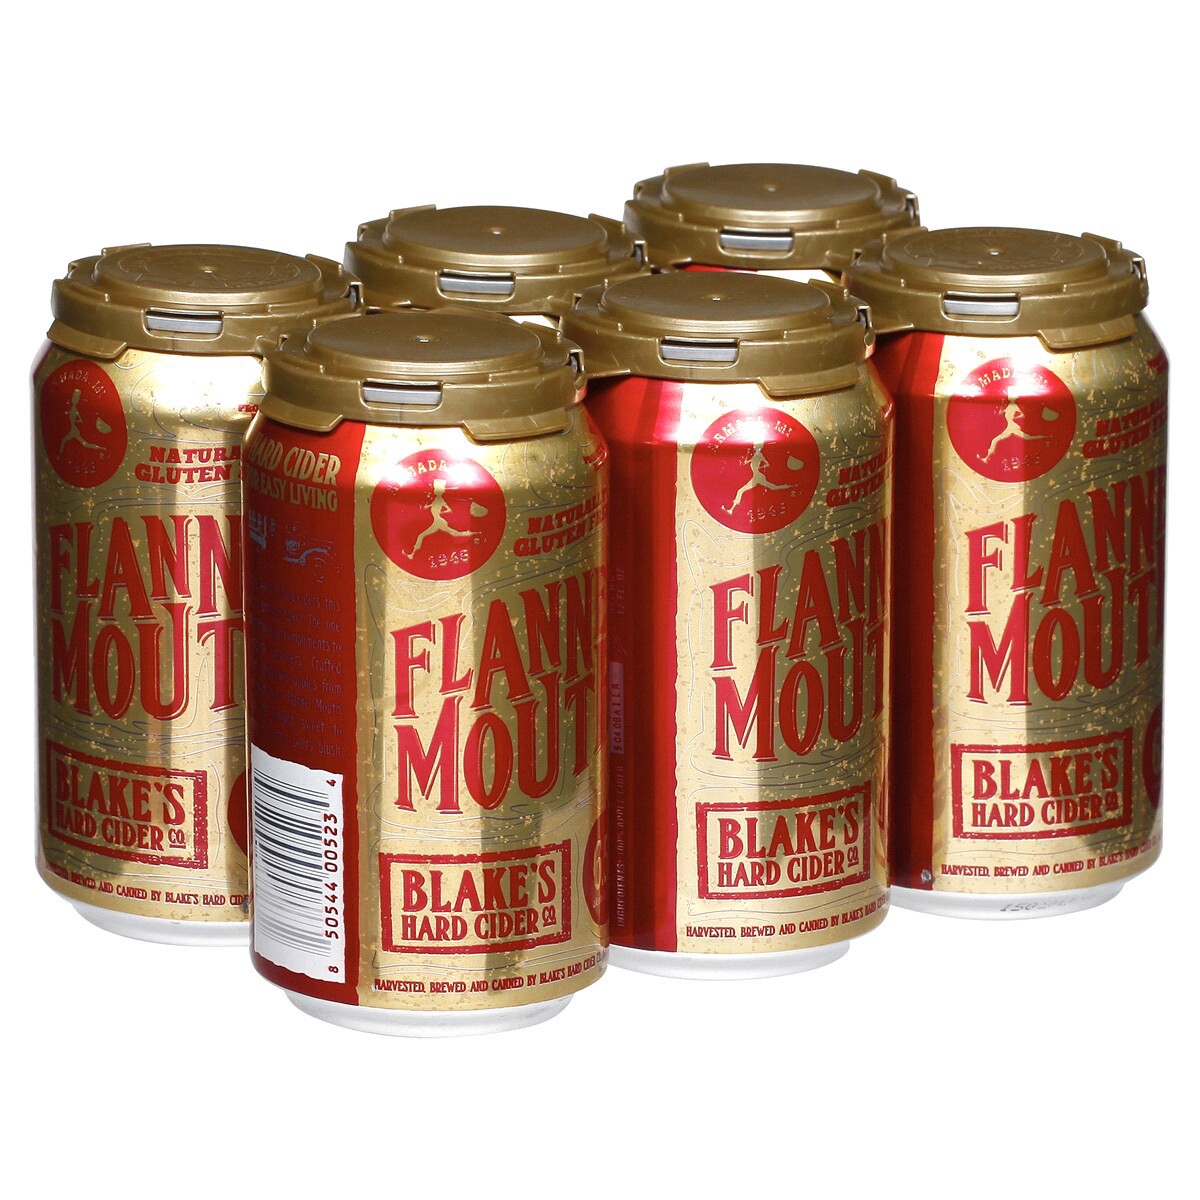 slide 5 of 5, Blake's Hard Cider Co Blake's Flannel Mouth Hard Cider - 6pk/12 fl oz Cans, 6 ct; 12 fl oz